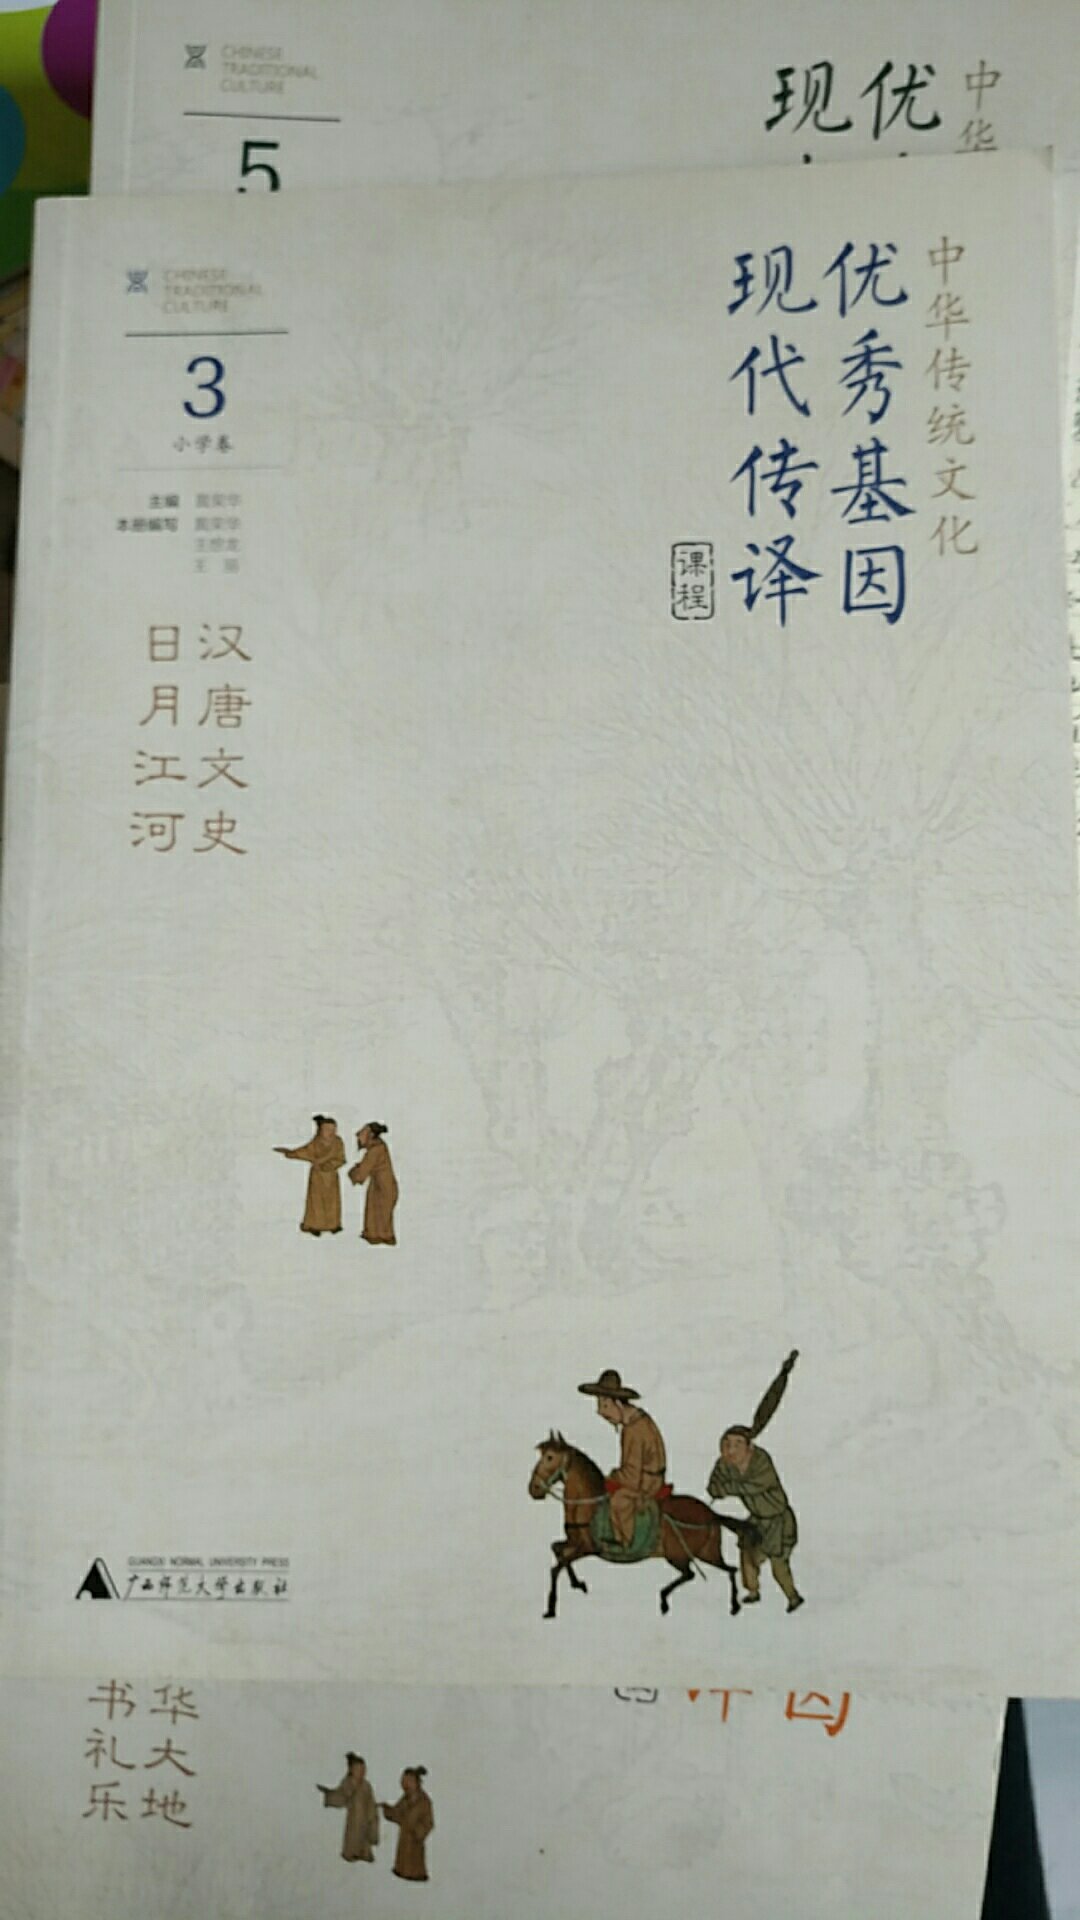 怎样让孩子能够更好的认识理解欣赏中华传统文化的优秀之处，怎样在引导孩子欣赏中华传统文化优秀之处时，实现古今联通，达到古今生命的对接？推荐这套书